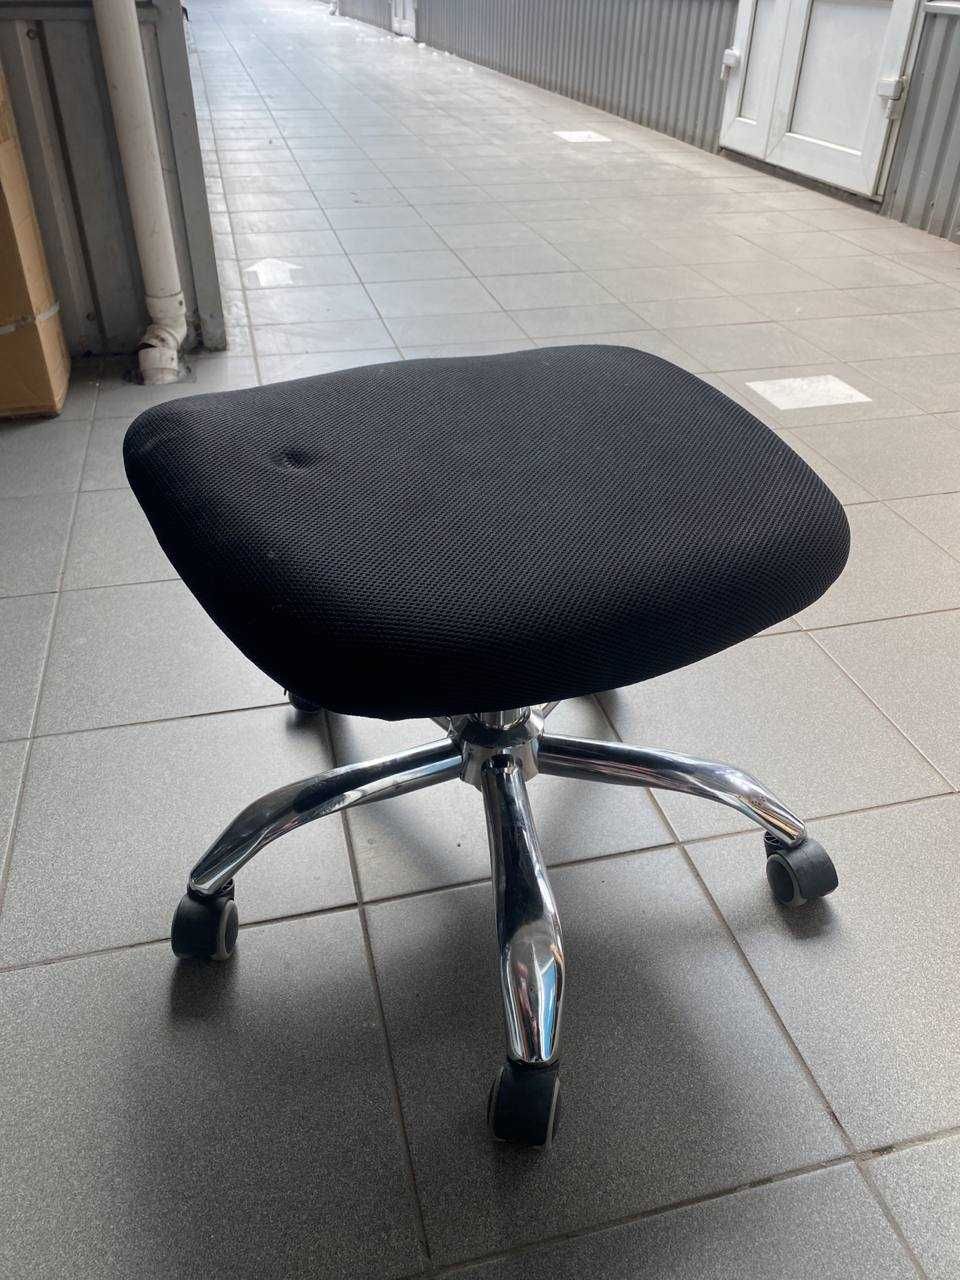 РАСПРОДАЖА офисной мебели стулья компьютерные кресла